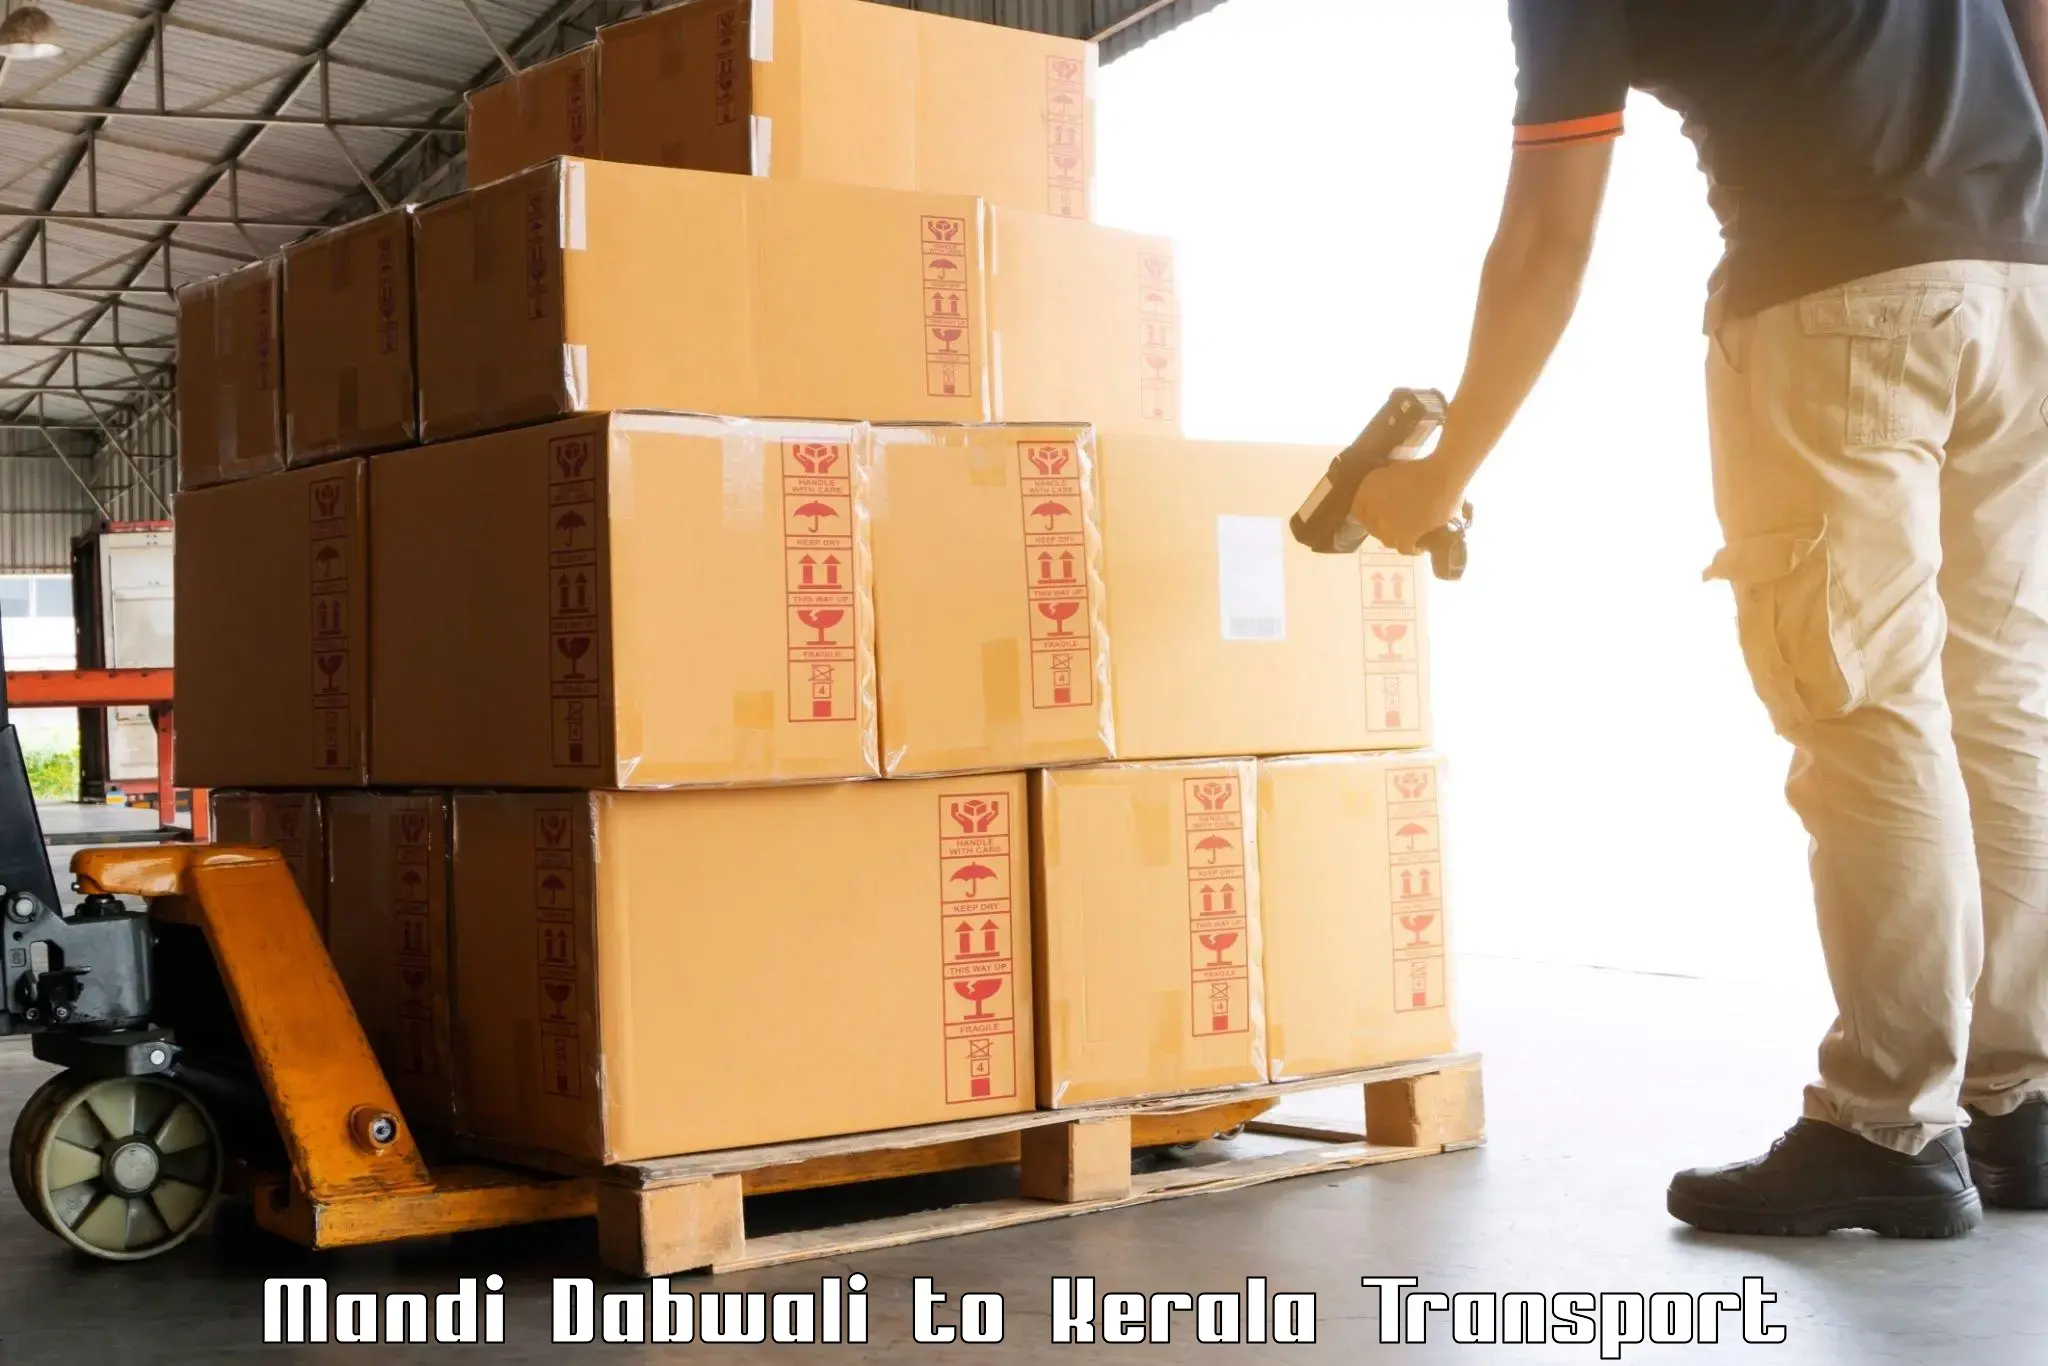 Truck transport companies in India Mandi Dabwali to Mundakayam